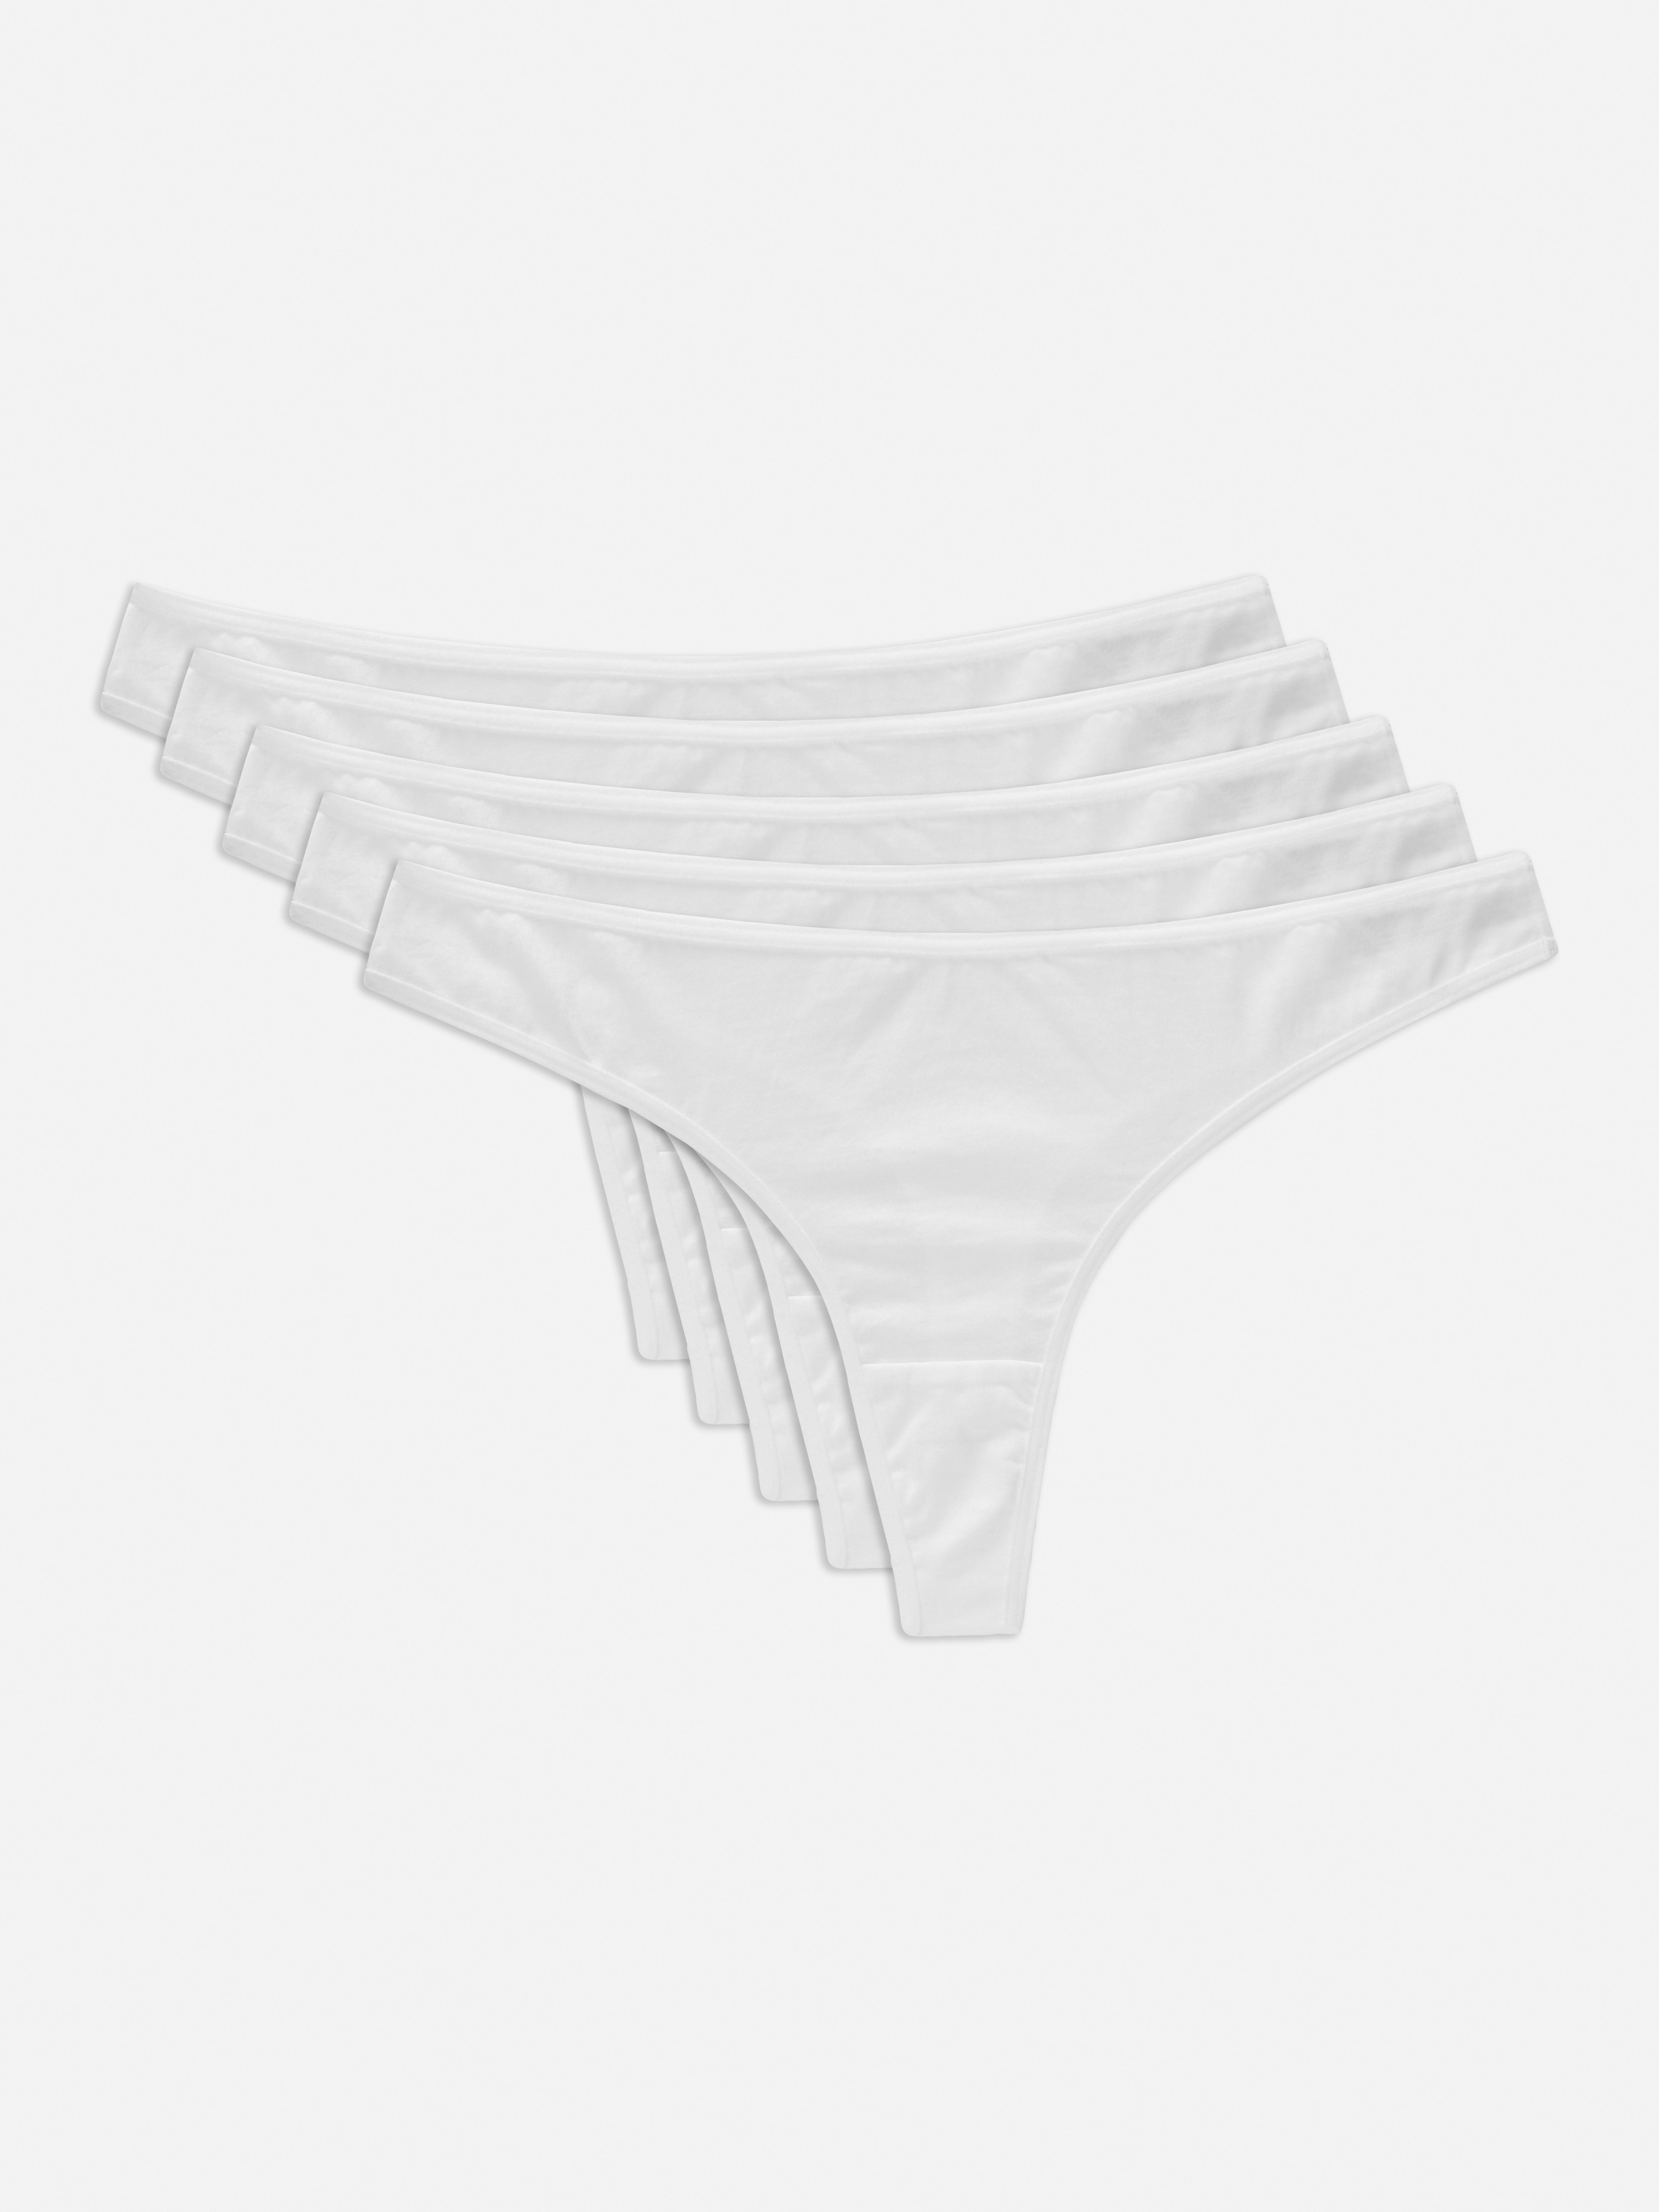 Primark Seamless Hipster Beige Underwear (3 piece set), Women's Fashion,  New Undergarments & Loungewear on Carousell